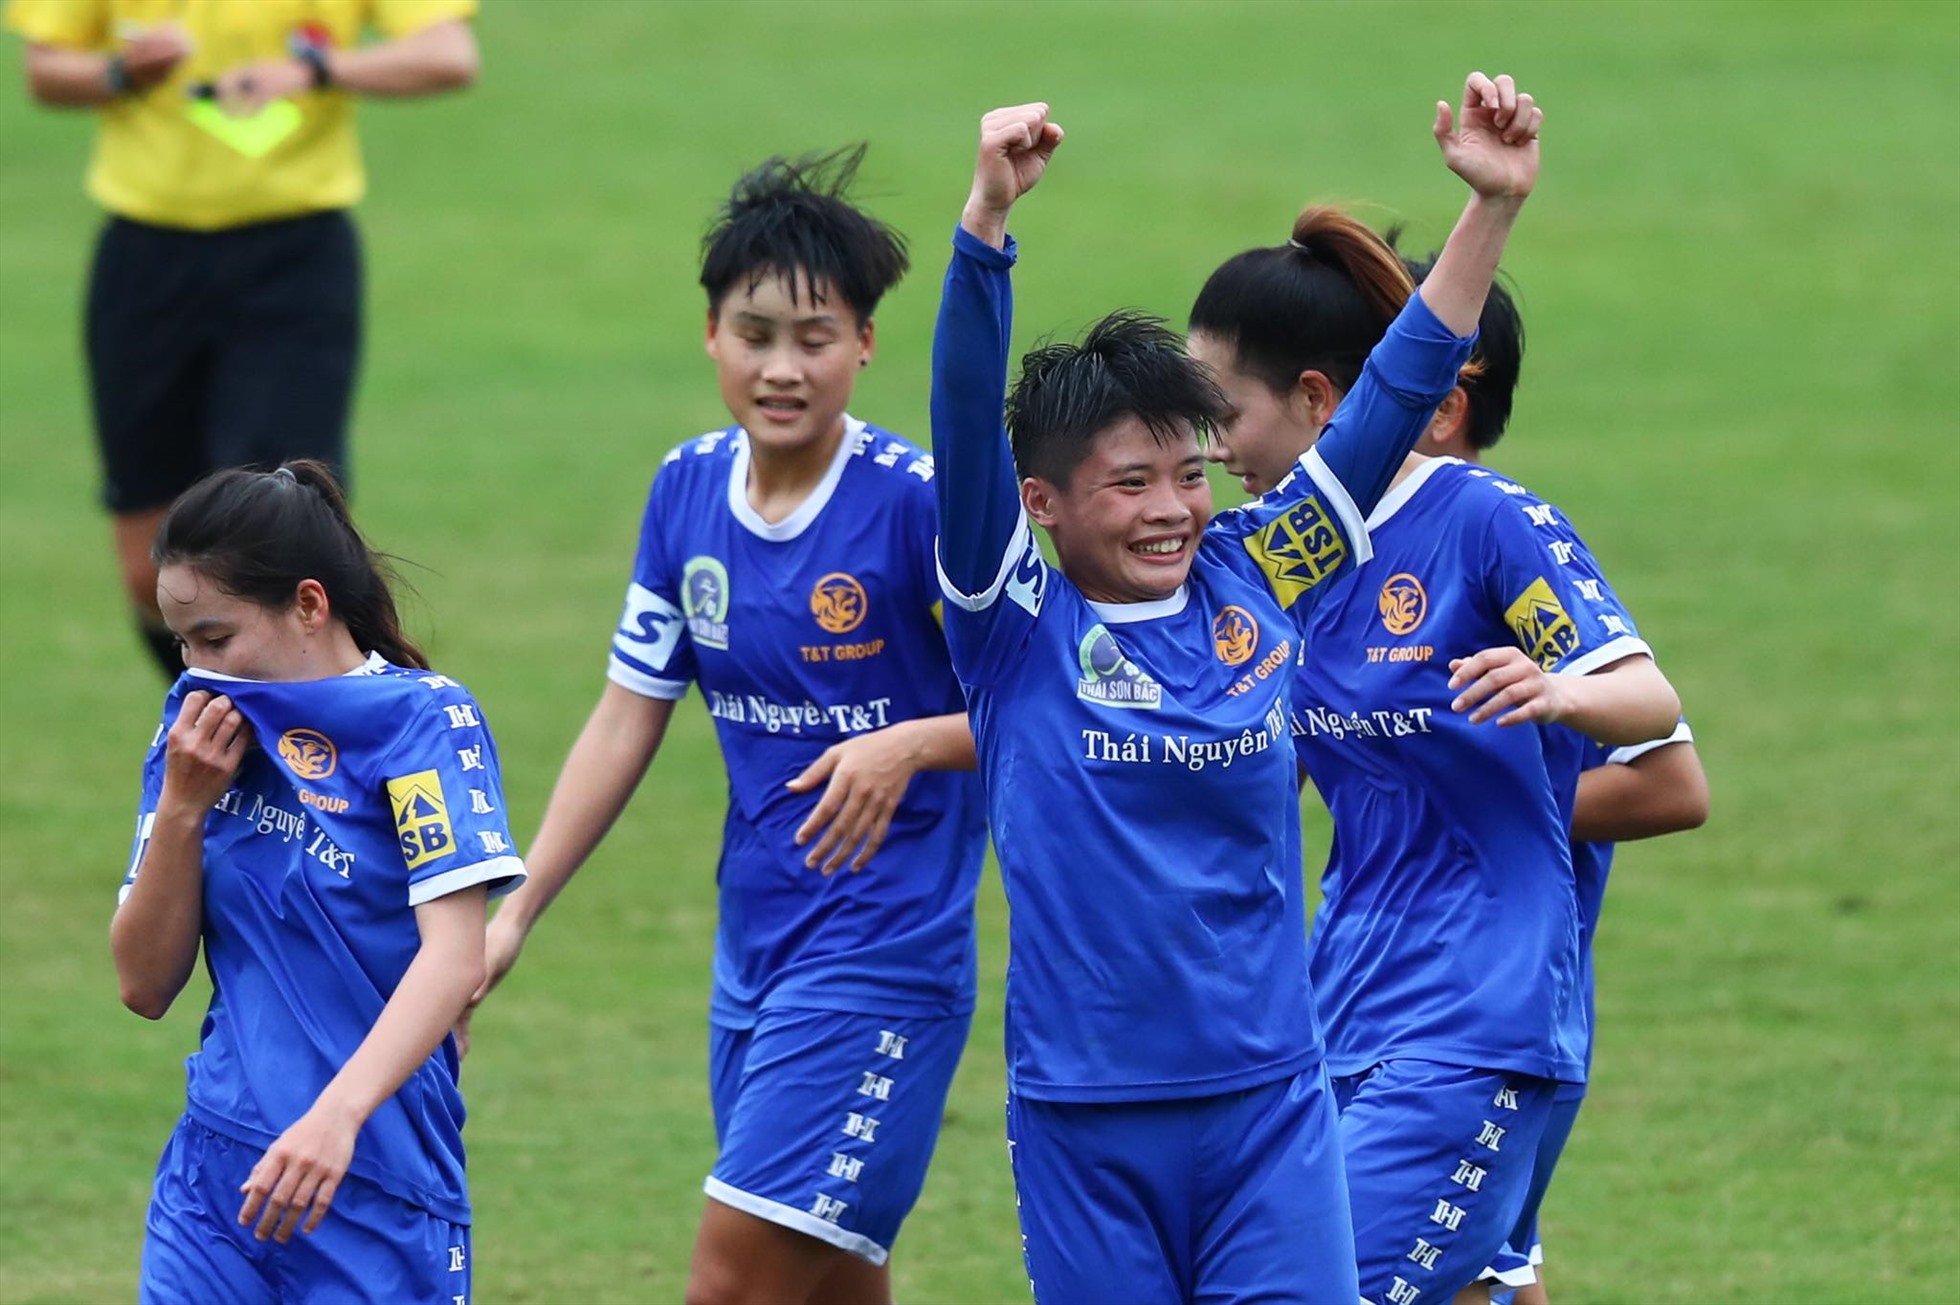 Đội nữ Thái Nguyên T&T nhiều khả năng sẽ tiếp tục có trận thắng thứ 2 tại Giải nữ vô địch quốc gia - Cúp Thái Sơn Bắc 2022.